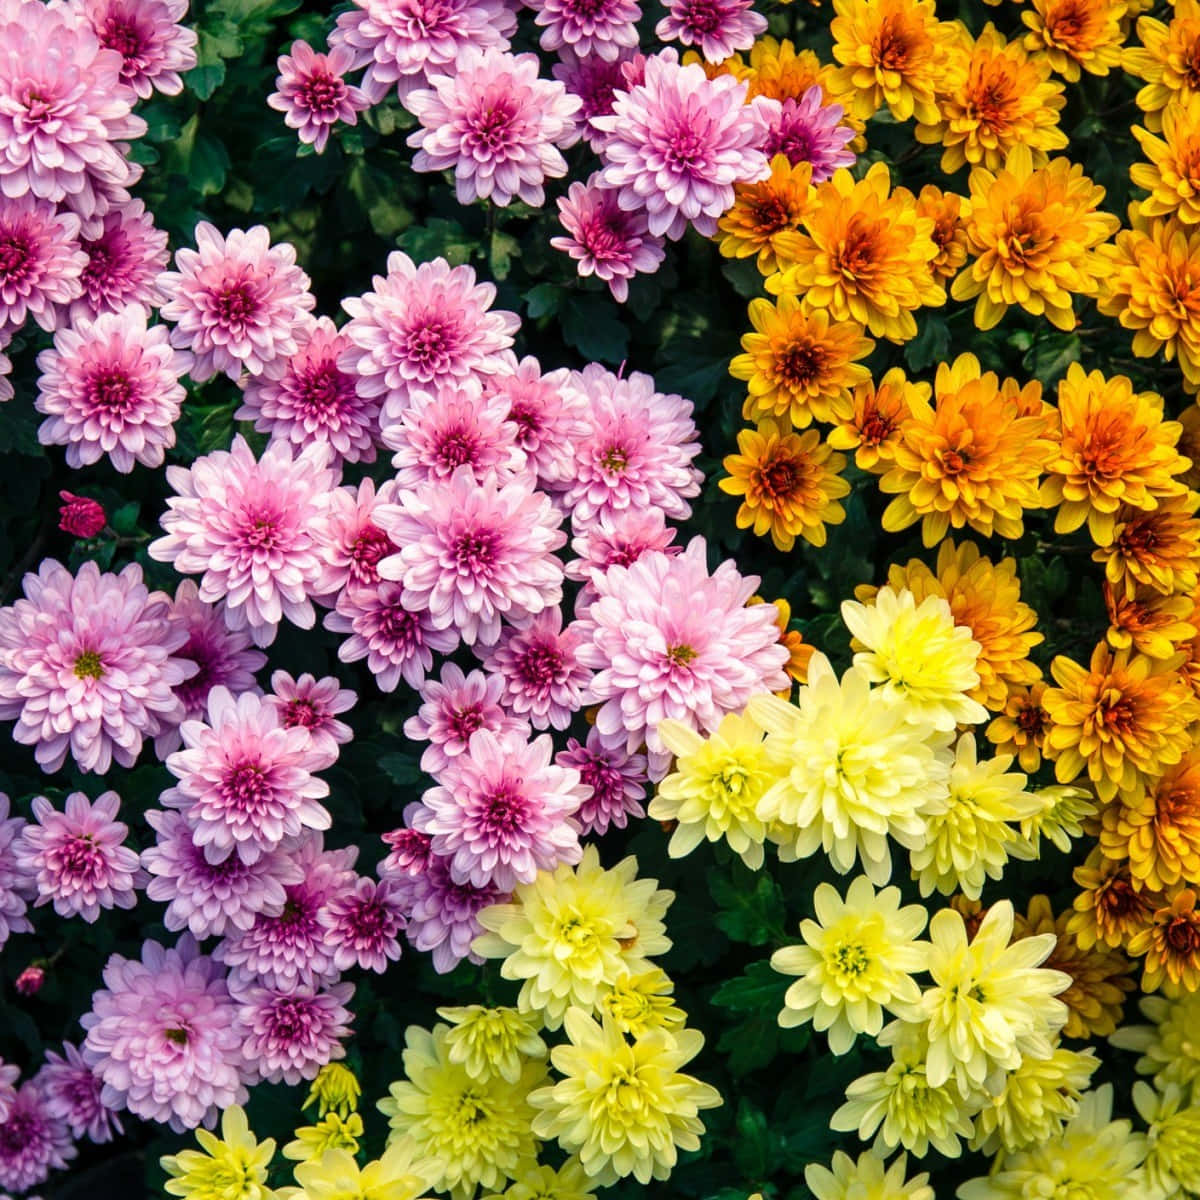 Leuchtendeorangefarbene Chrysanthemenblume